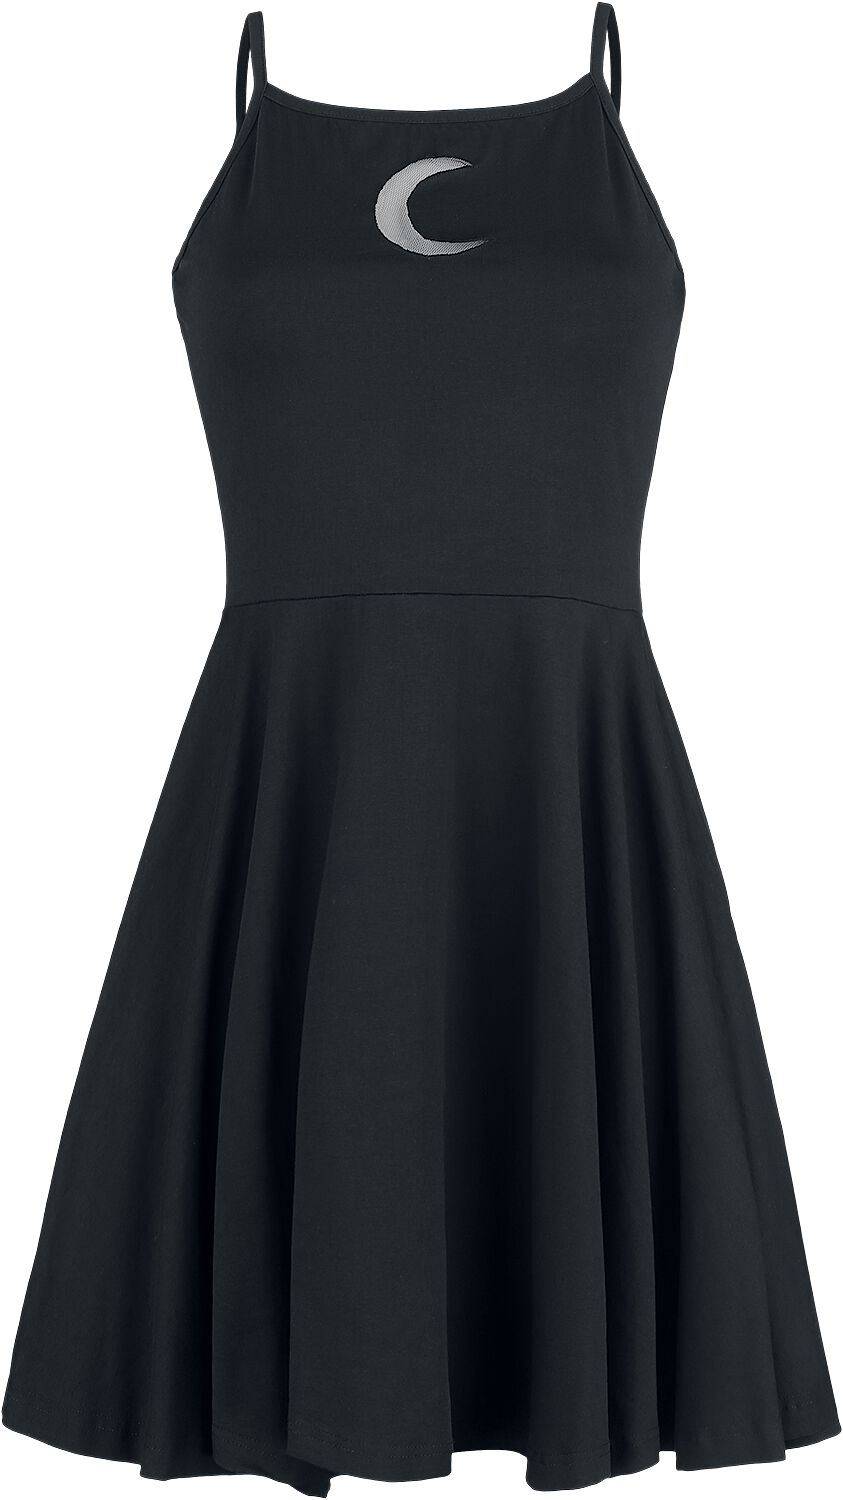 Heartless - Gothic Kurzes Kleid - Zaylee Dress - XS bis XL - für Damen - Größe S - schwarz